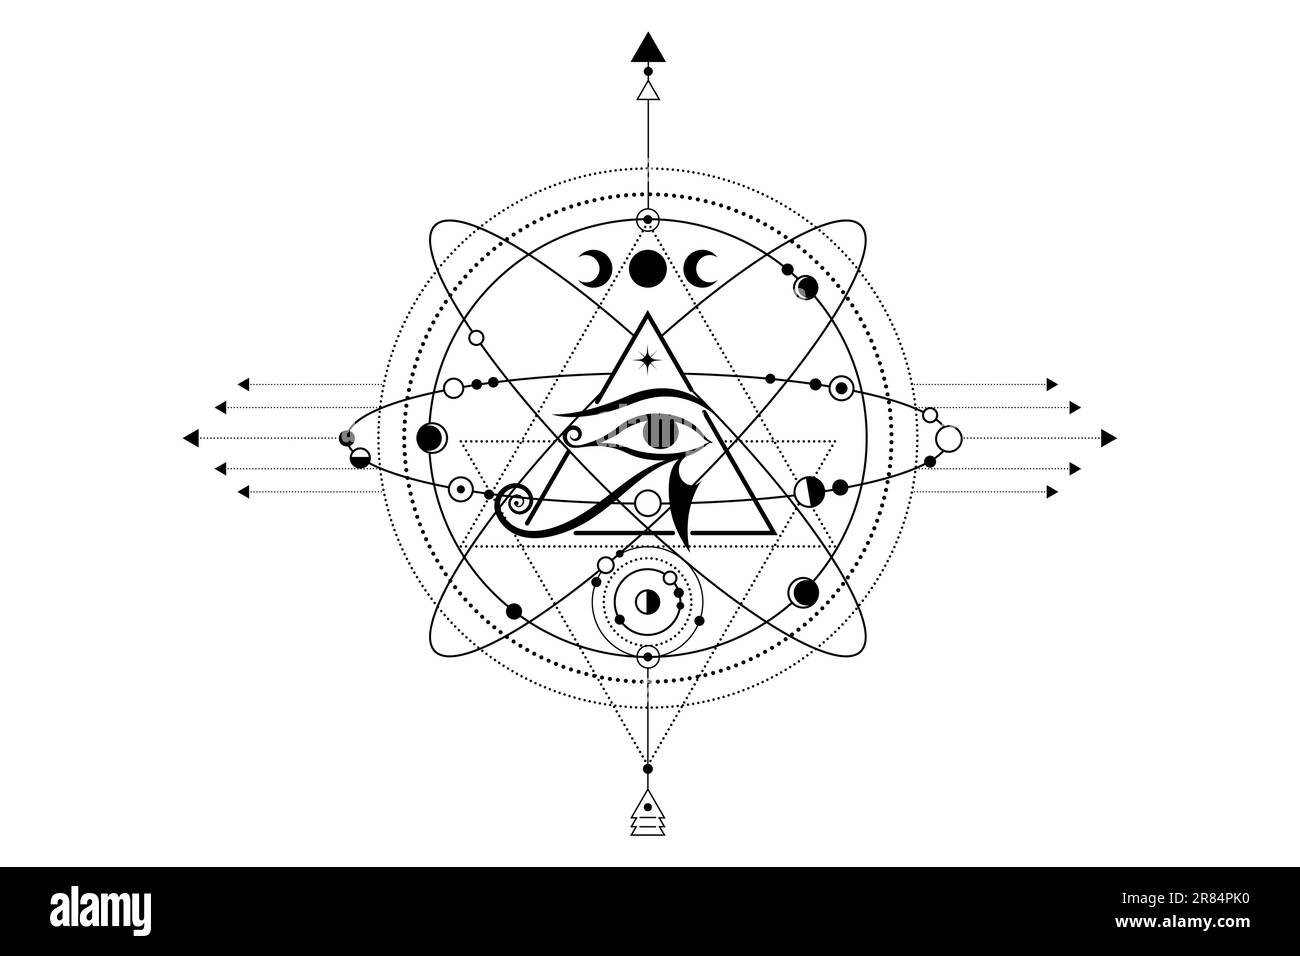 Logo Eye of Horus. L'ancien symbole de la pyramide égyptienne, le troisième oeil, les symboles cosmiques, les orbites de planètes, le système lunaire. Vecteur isolé sur blanc Illustration de Vecteur